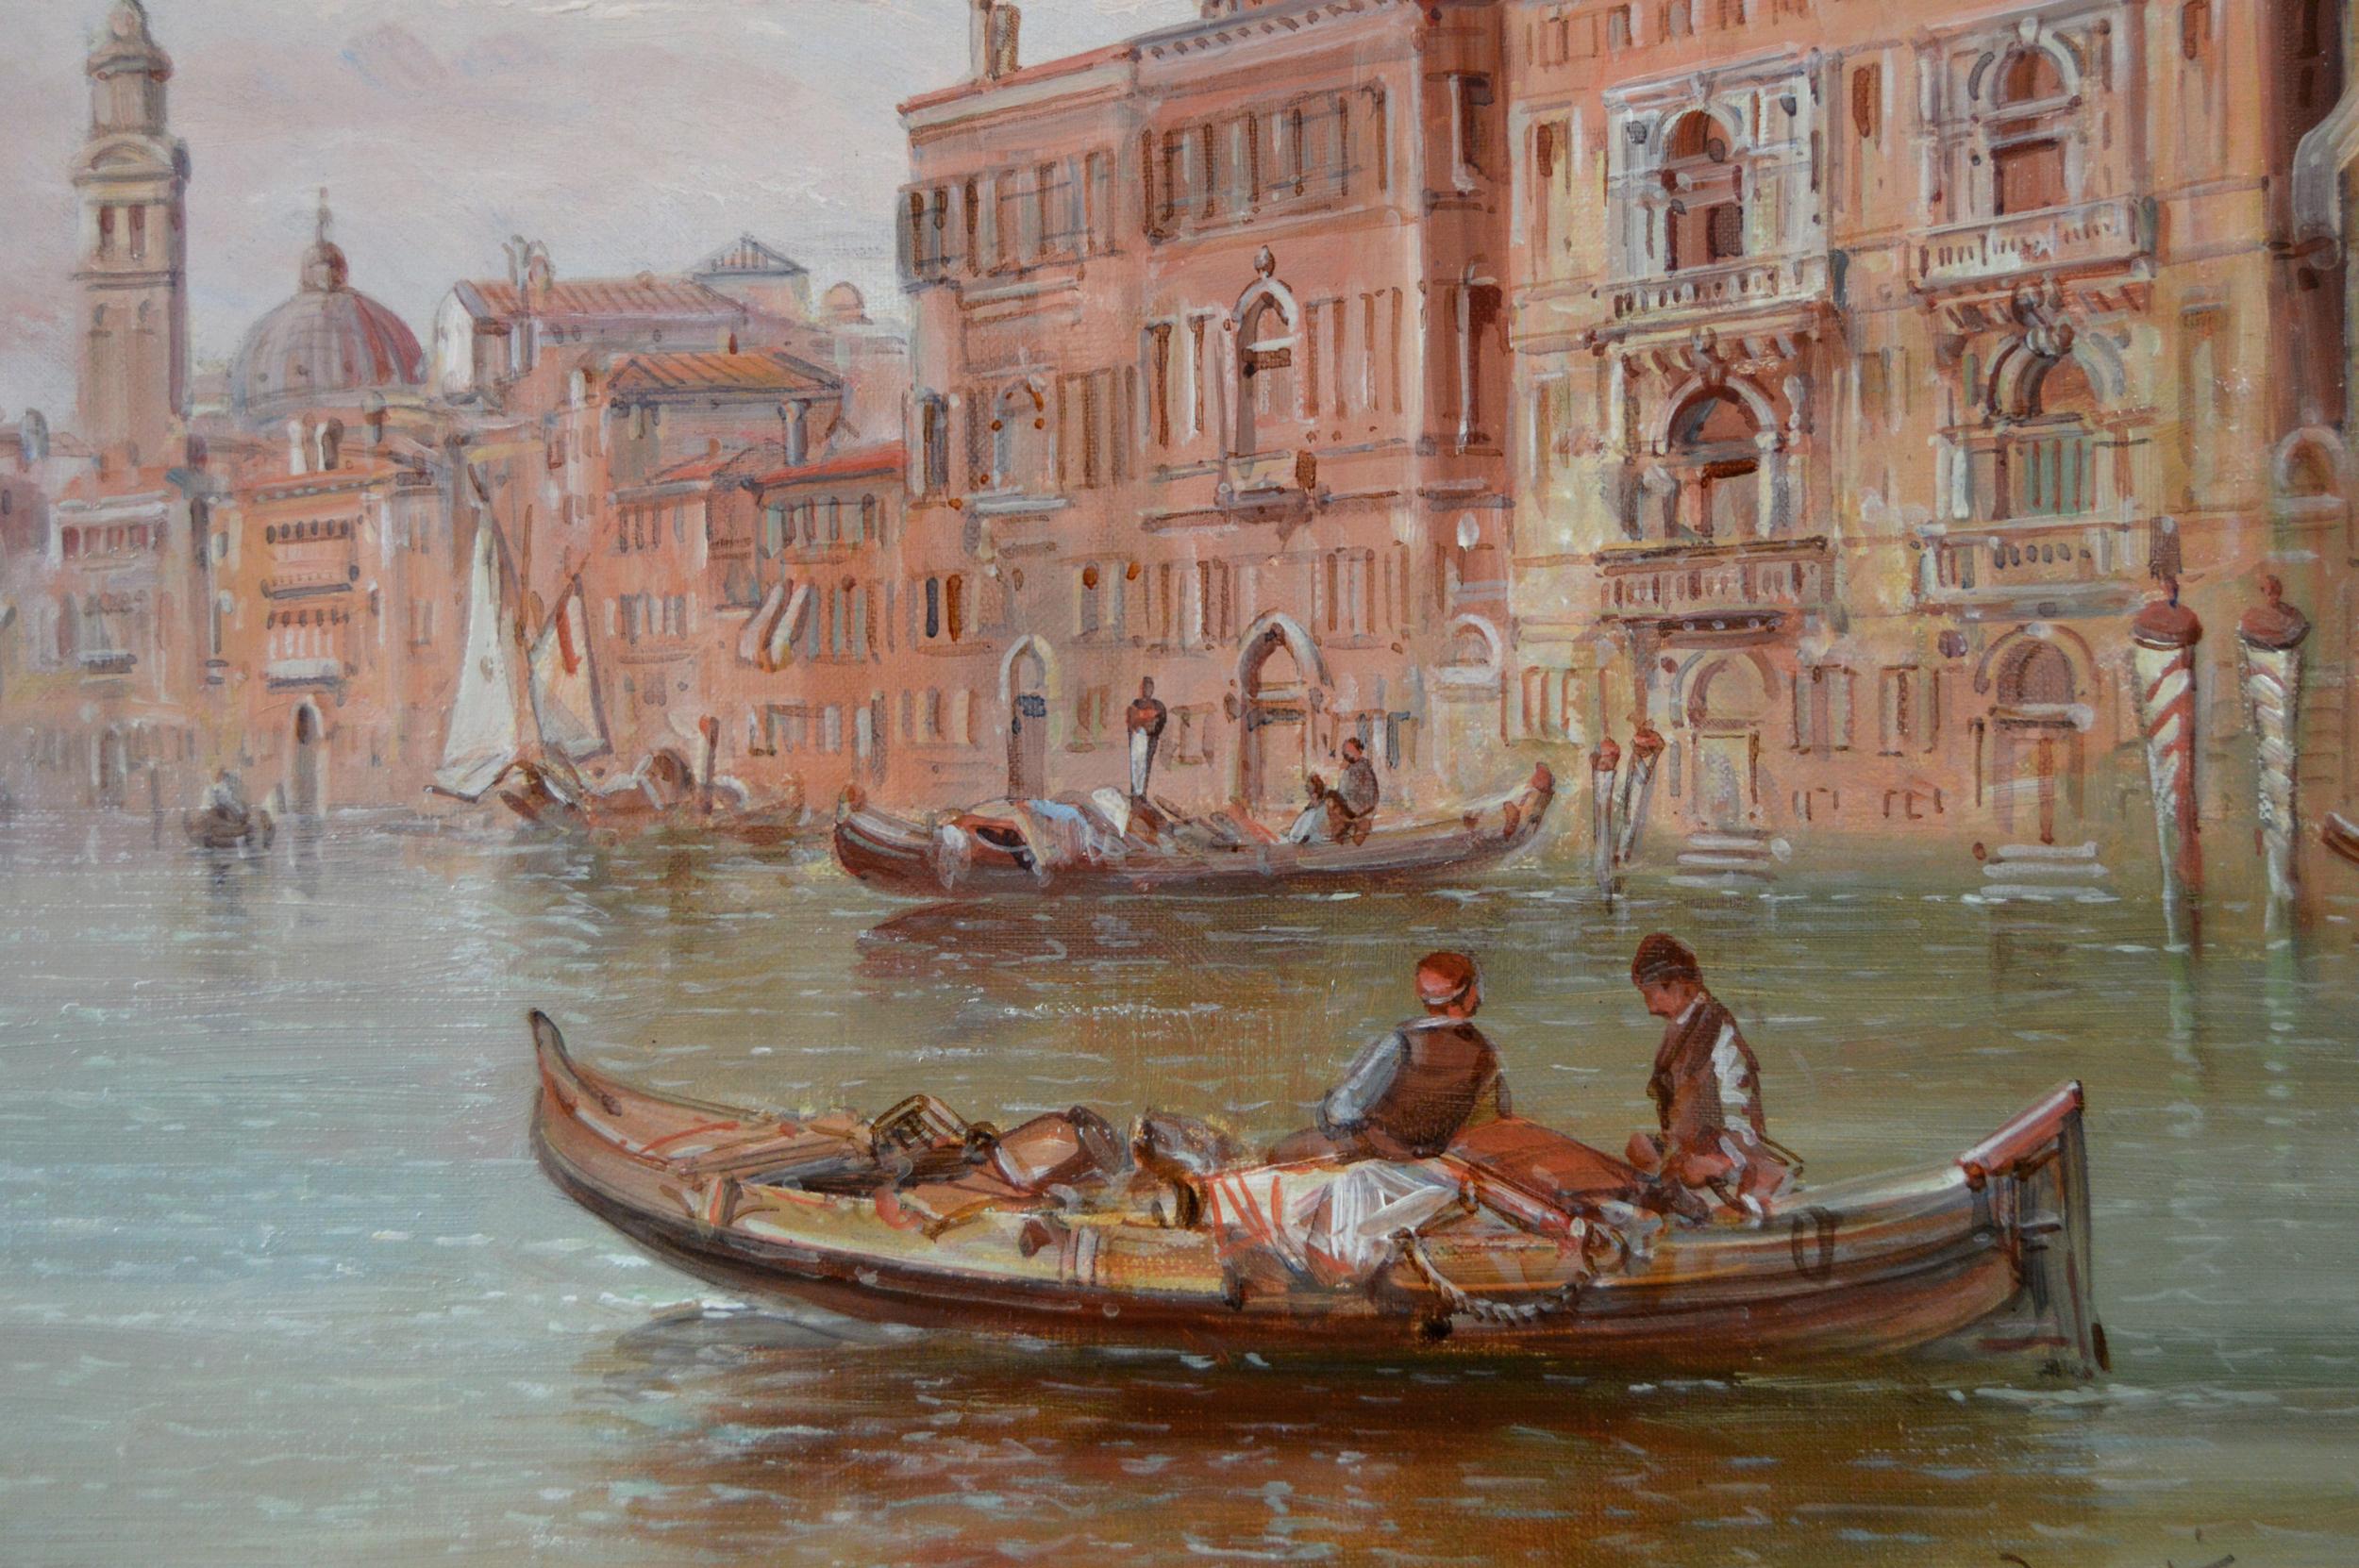 Alfred Pollentine
Britannique, (1844-1910)
Le Grand Canal, Venise
Huile sur toile, signée et accompagnée d'une inscription au verso
Taille de l'image : 15.5 pouces x 23.5 pouces 
Dimensions, y compris le cadre : 22,5 pouces x 30,5 pouces

Une